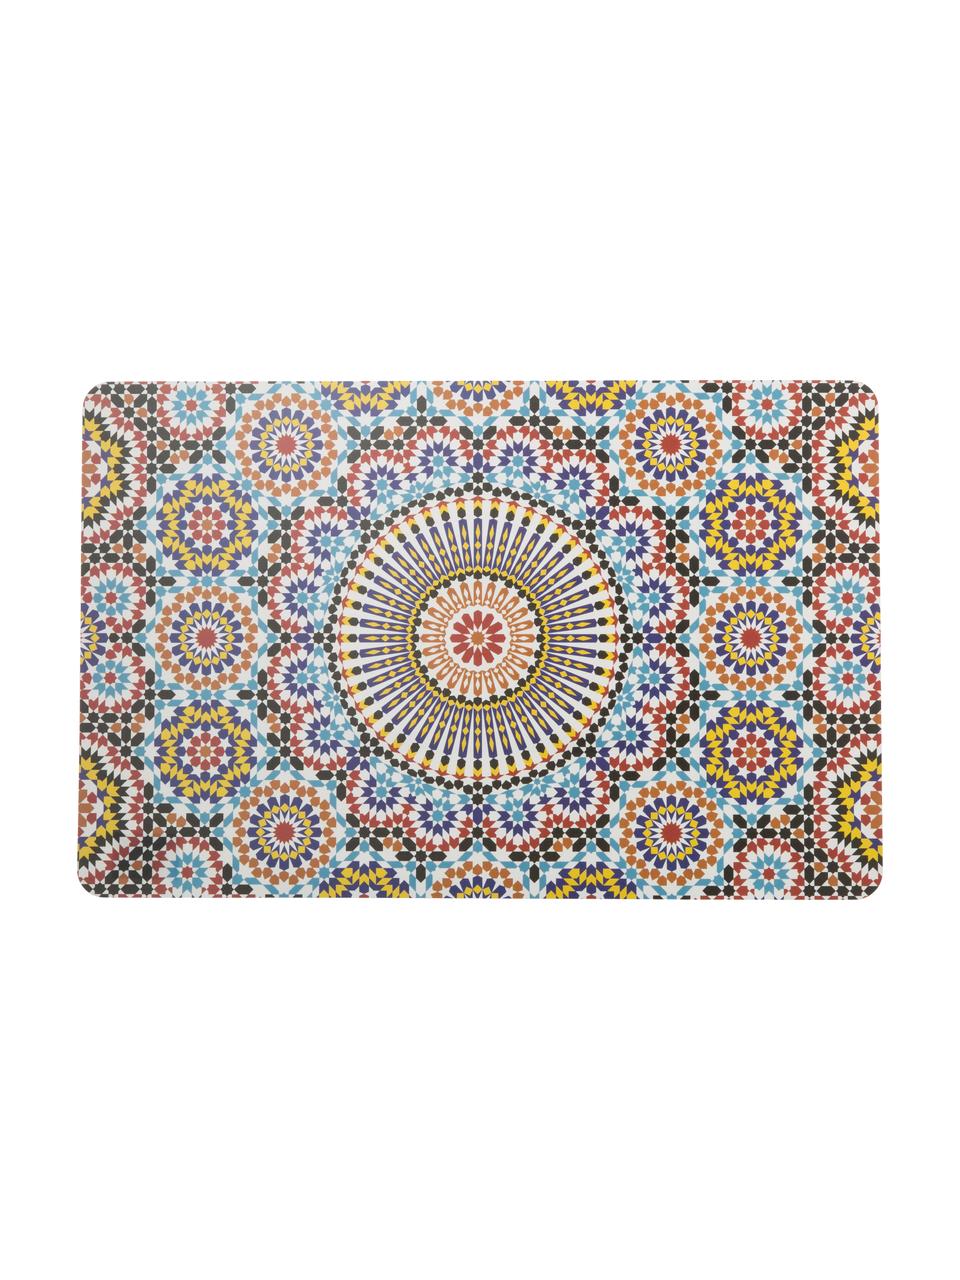 Komplet podkładek z tworzywa sztucznego Marrakech, 6 elem., Tworzywo sztuczne, Wielobarwny, S 28 x D 44 cm